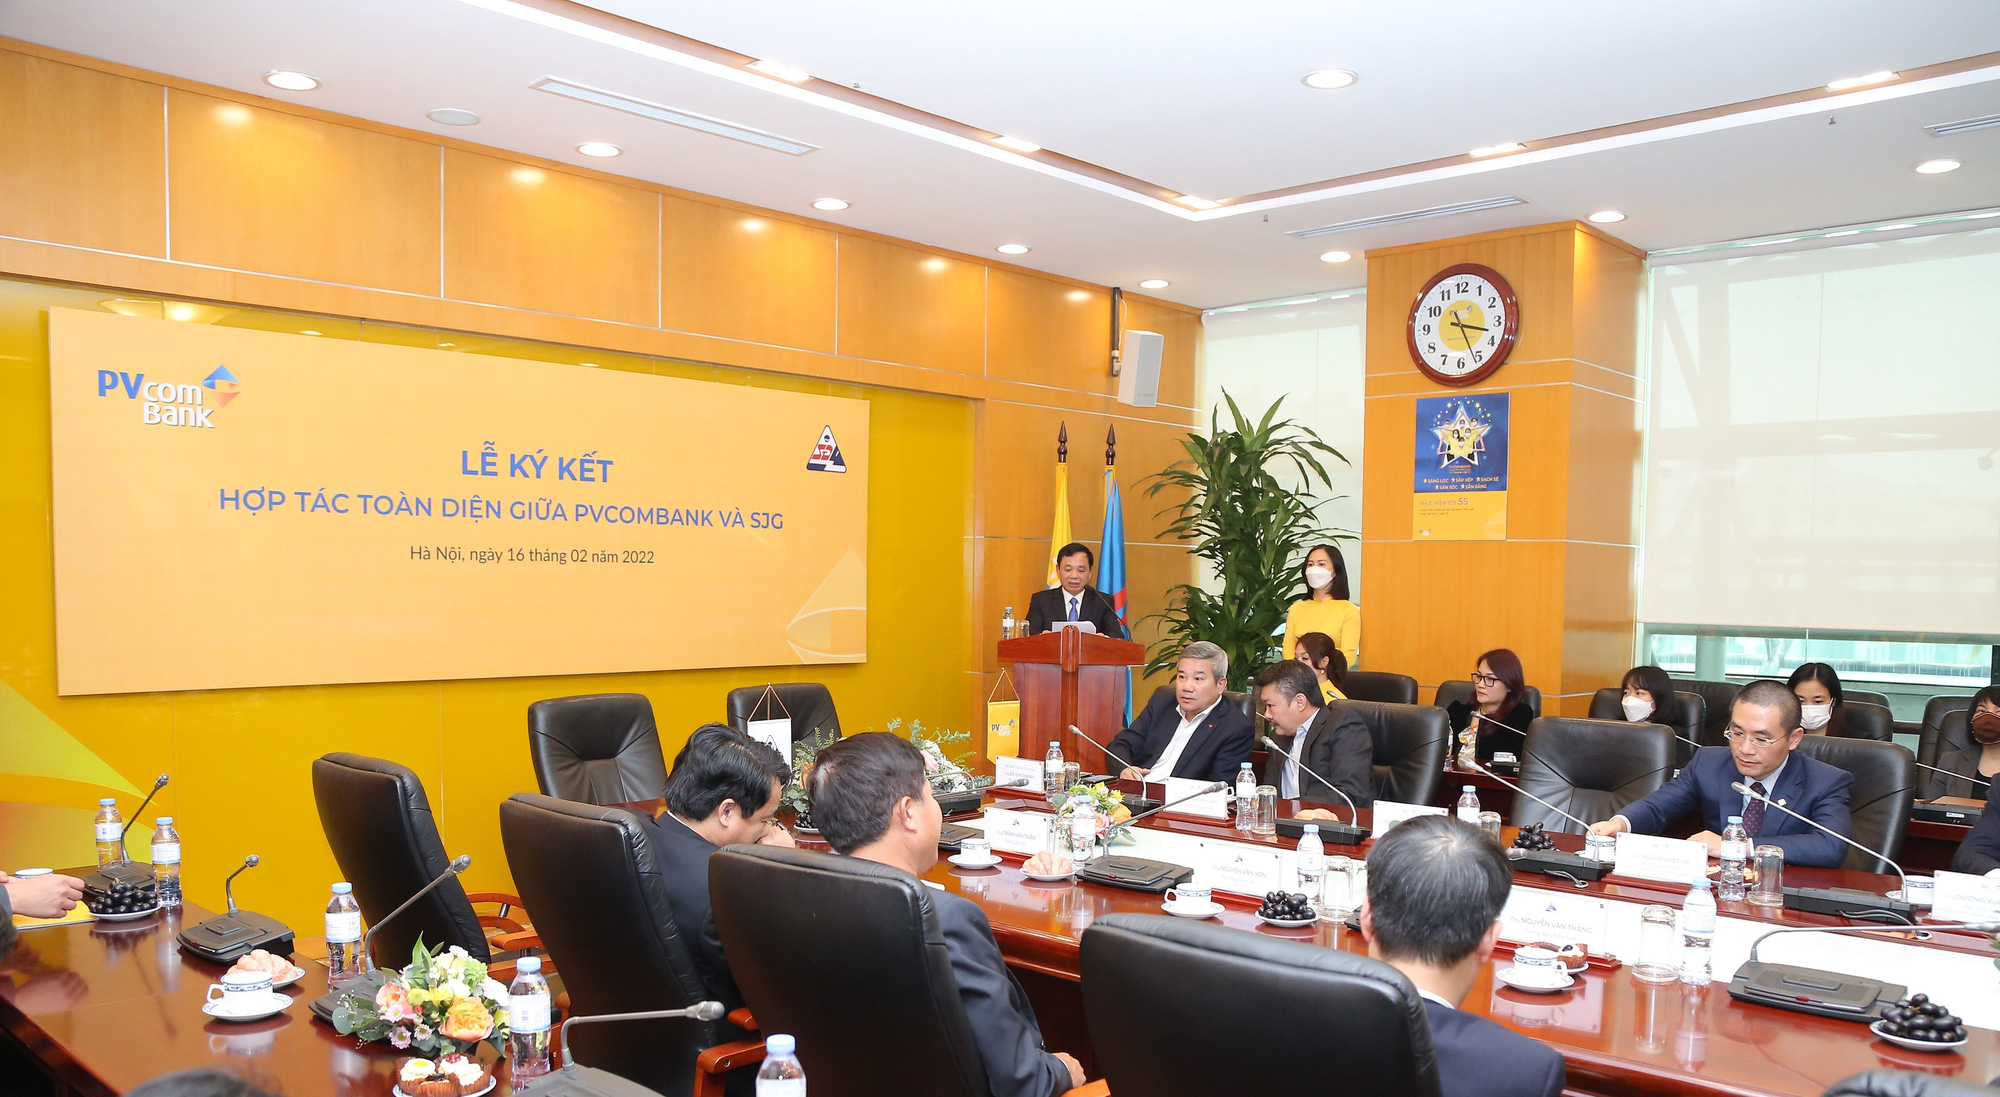 PVcomBank và Tổng Công ty Sông Đà ký thỏa thuận hợp tác toàn diện - Ảnh 3.